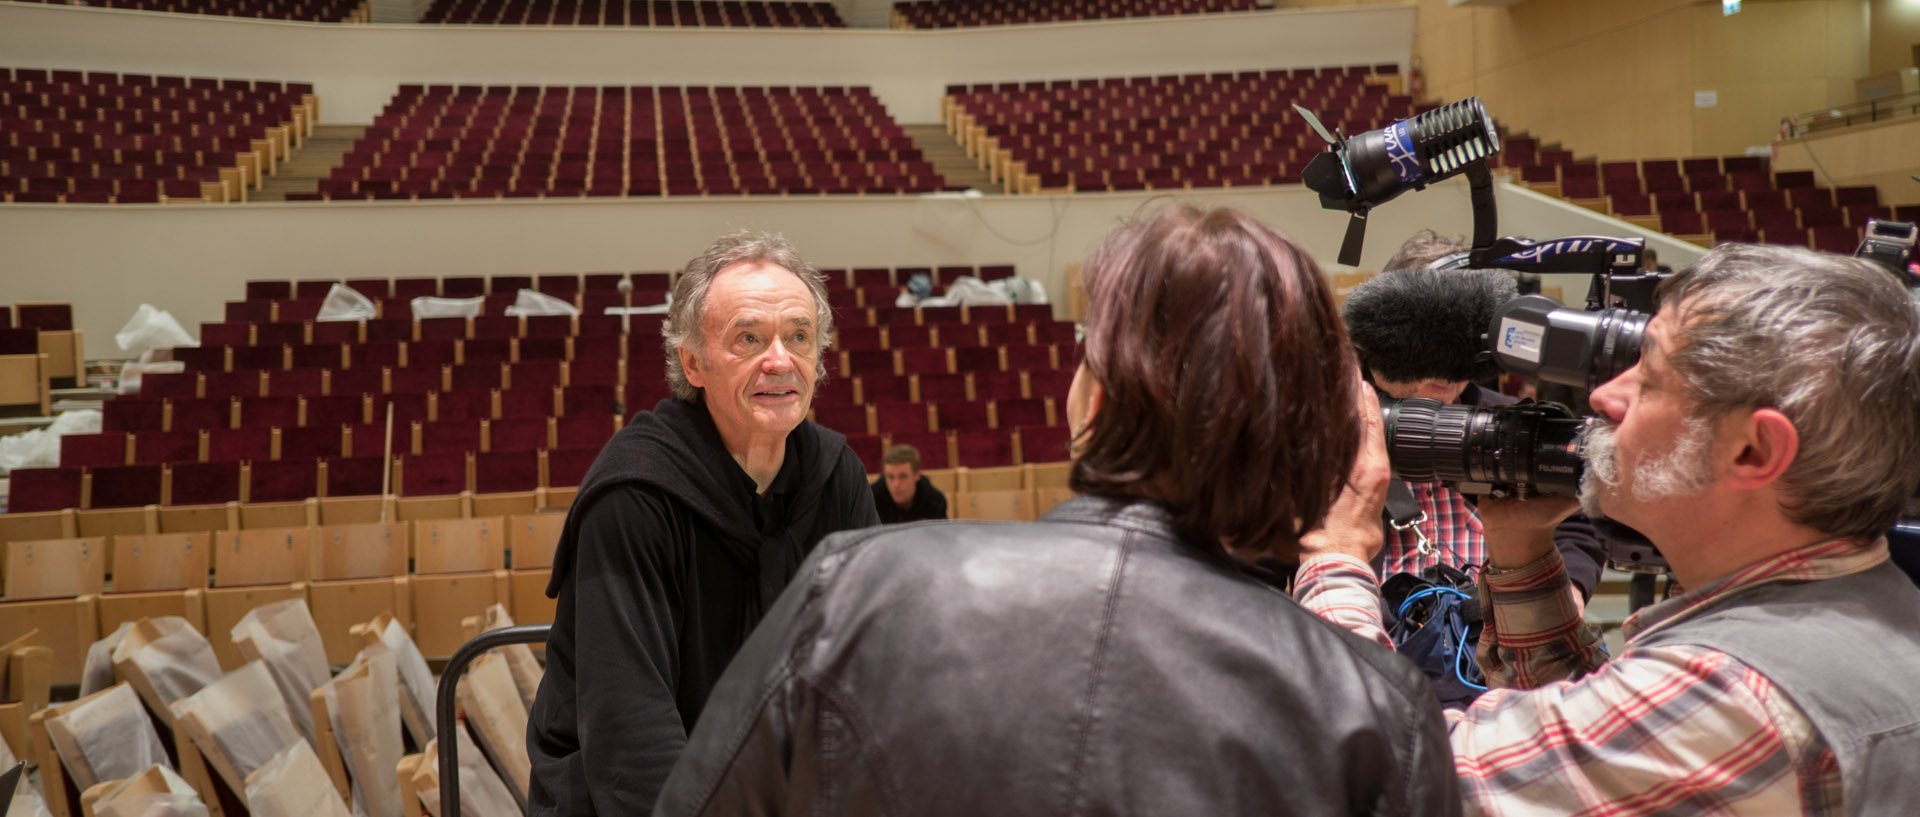 Le chef d'orchestre Jean-Claude Casadesus interviewé par FR3, dans le nouvel auditorium du Nouveau Siècle, à Lille.